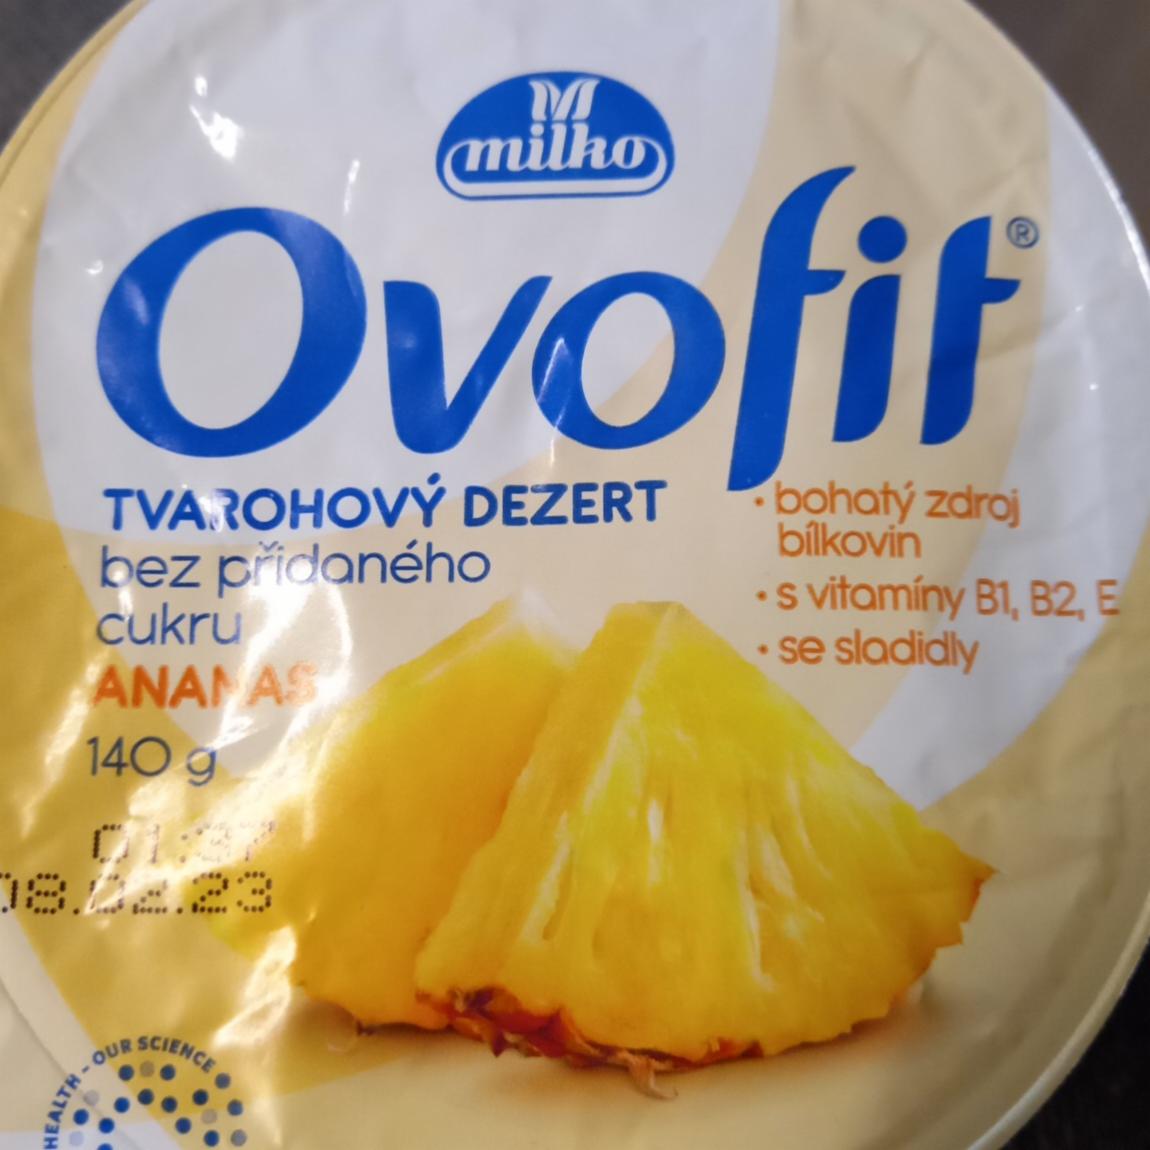 Fotografie - Ovofit tvarohový dezert ananásový Milko